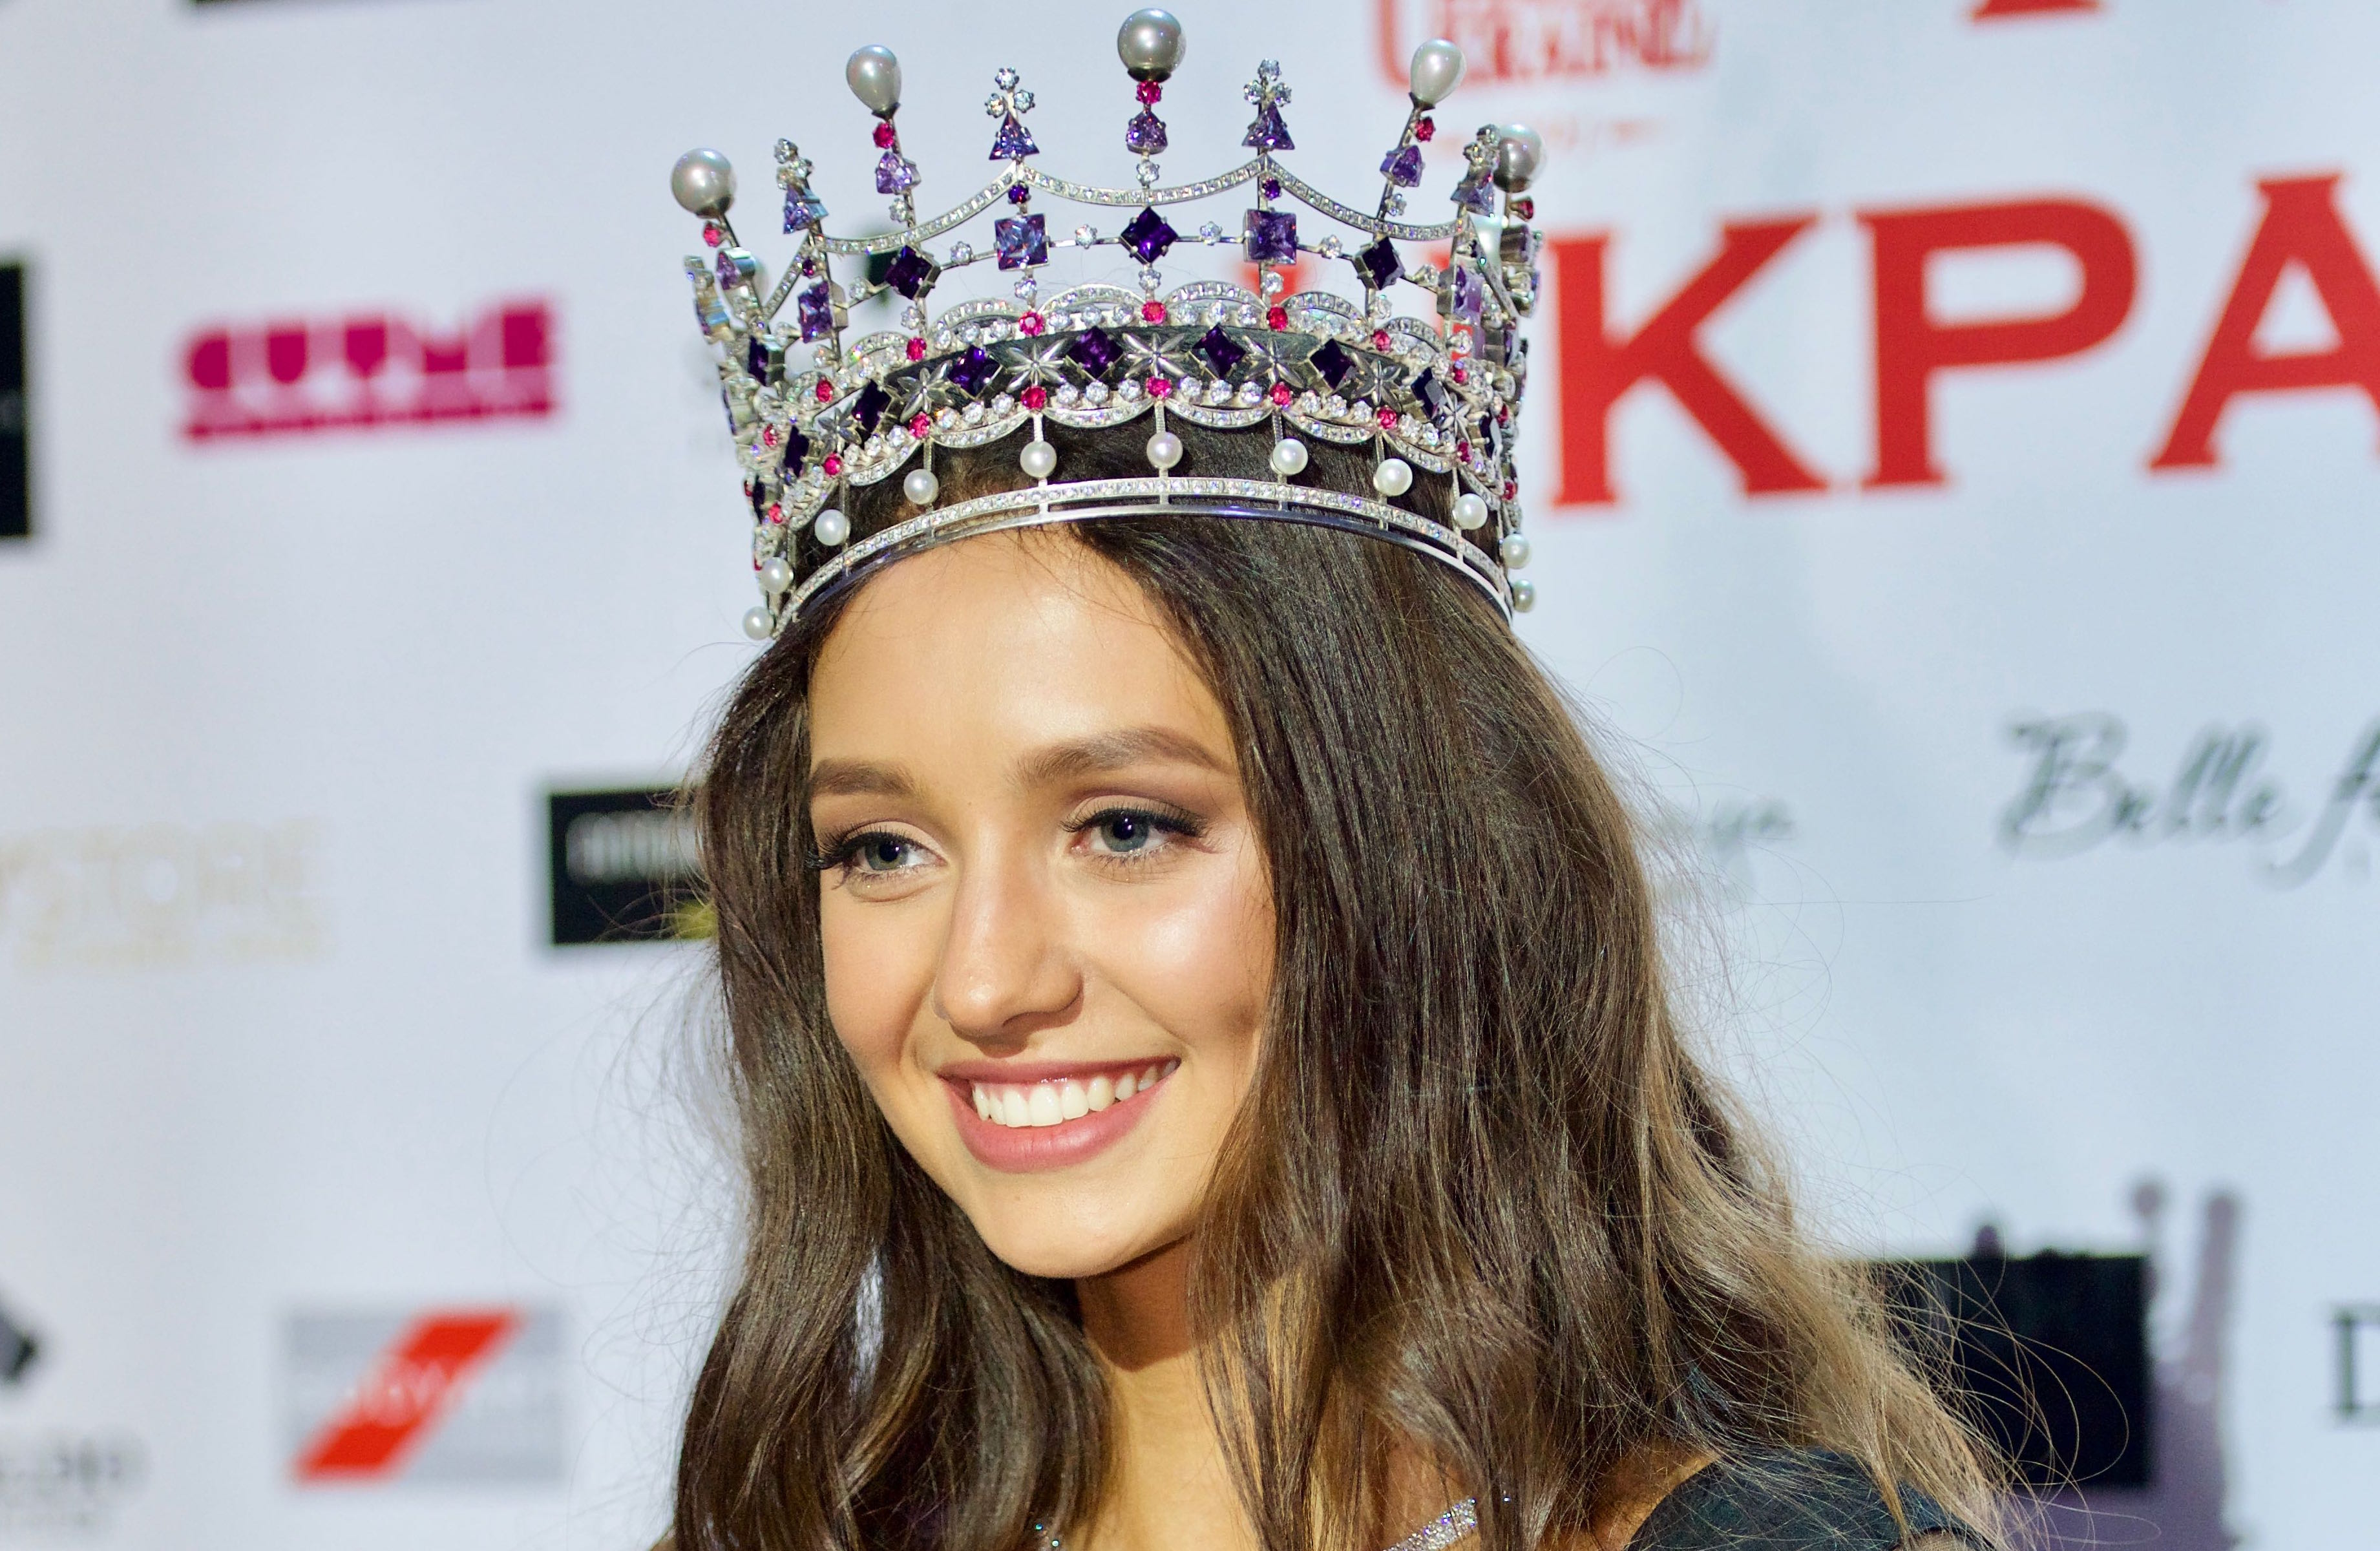 Роскошная корона и голливудская улыбка: в Киеве выбрали Мисс Украина-2017